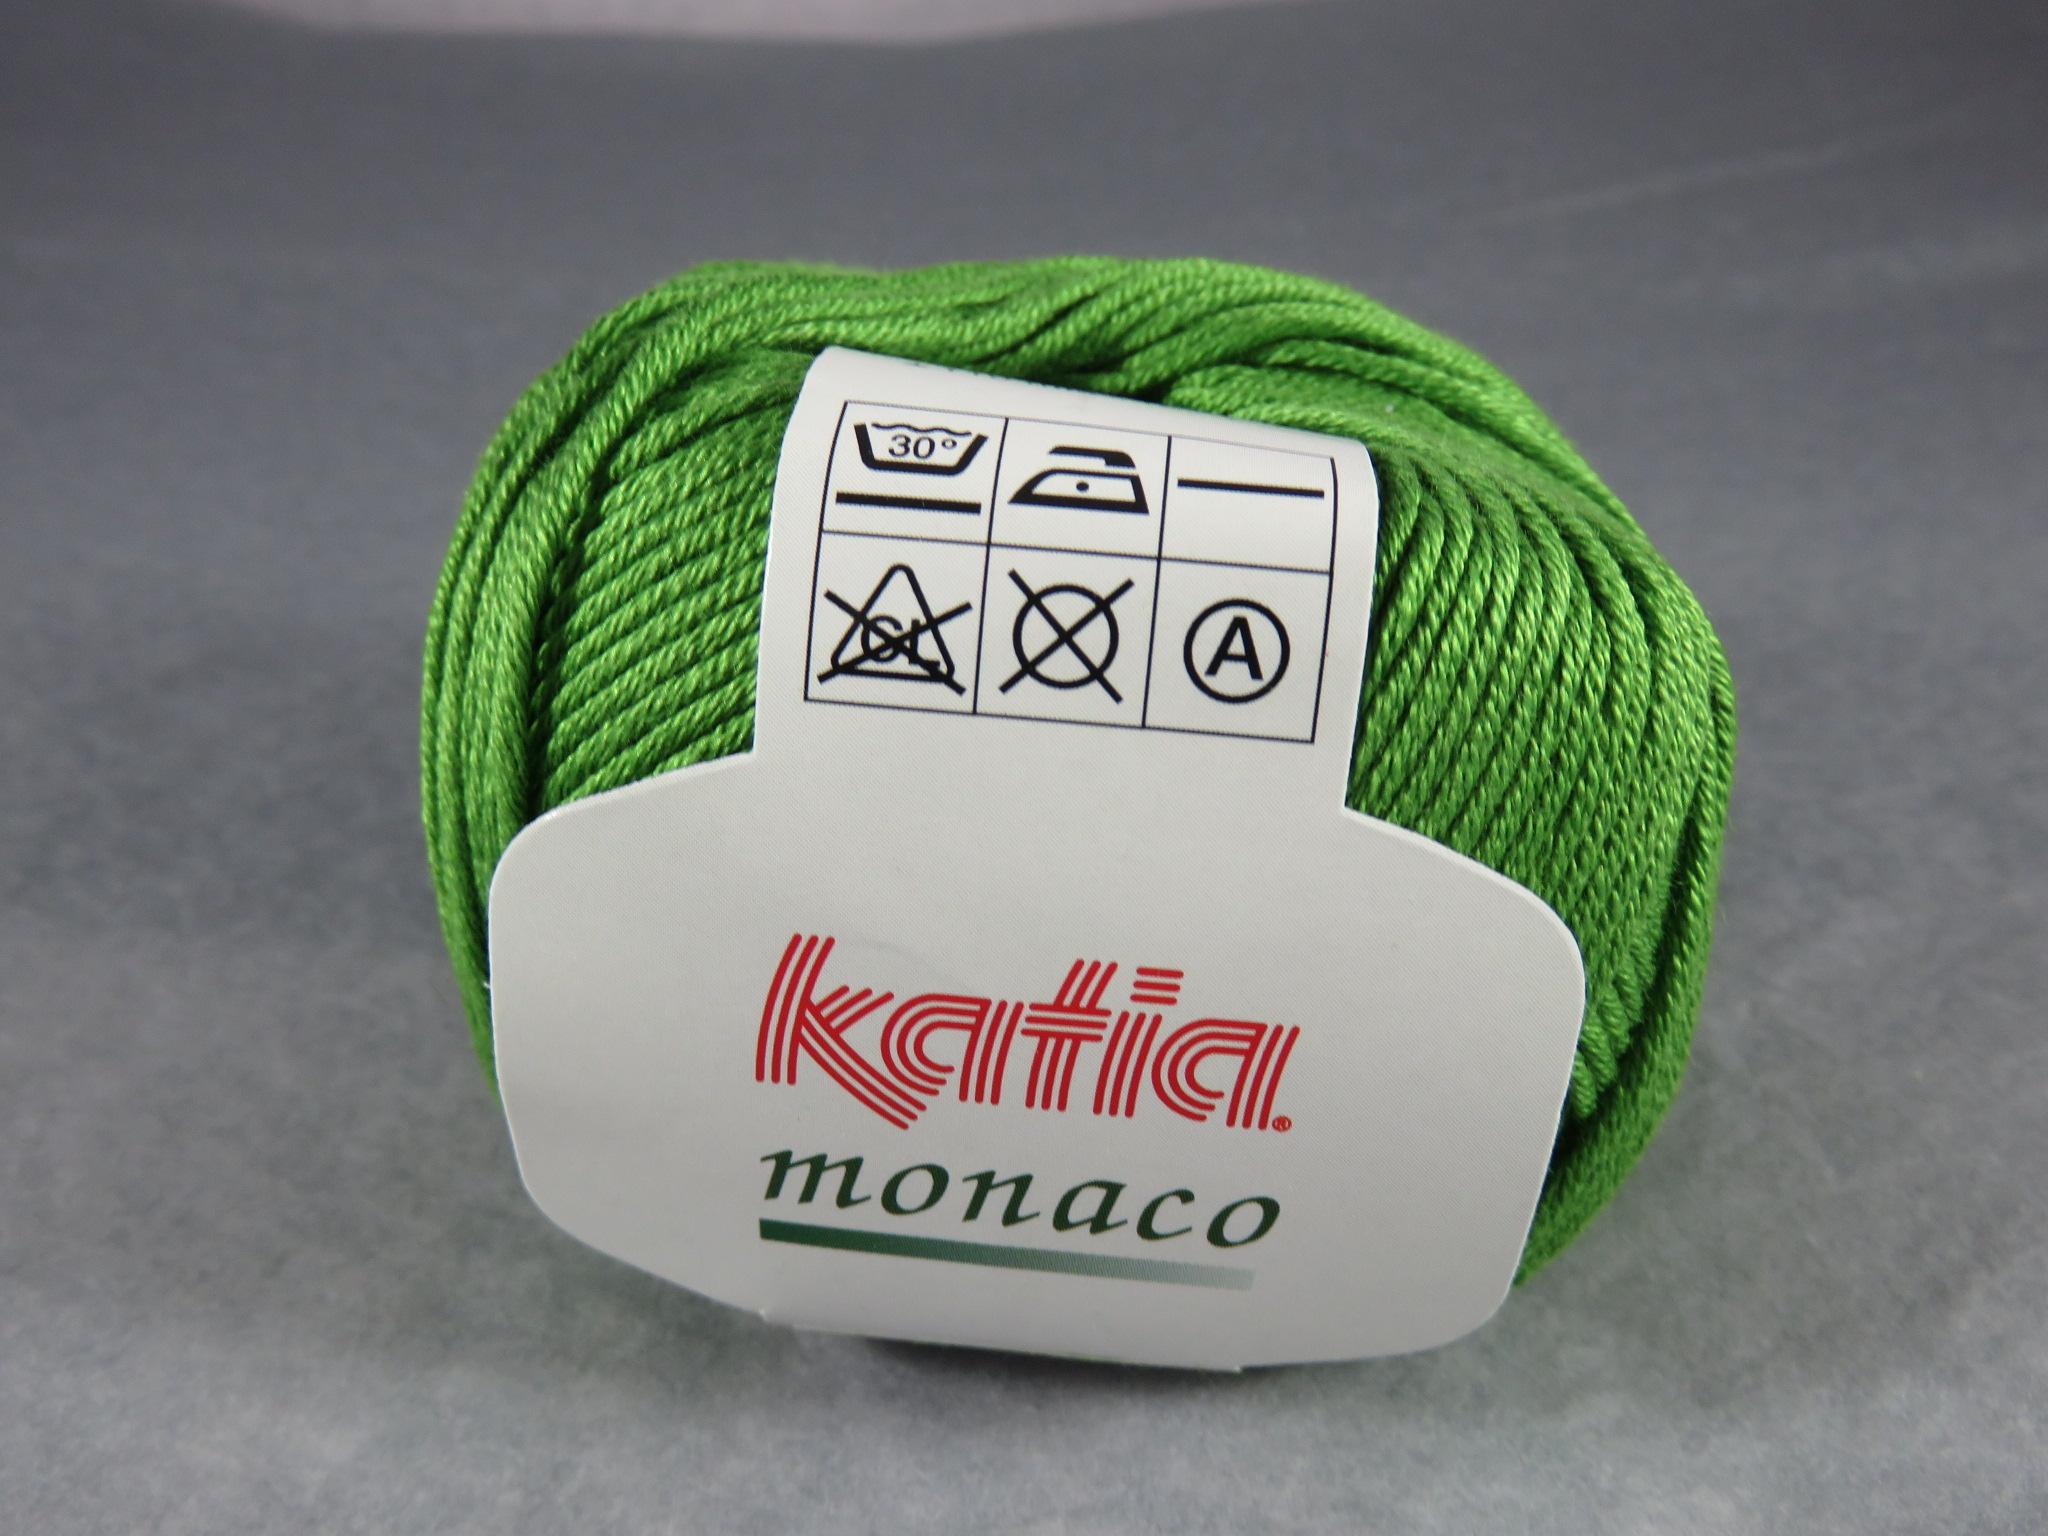 Fil coton Katia Monaco vert pelote coton mercerisé